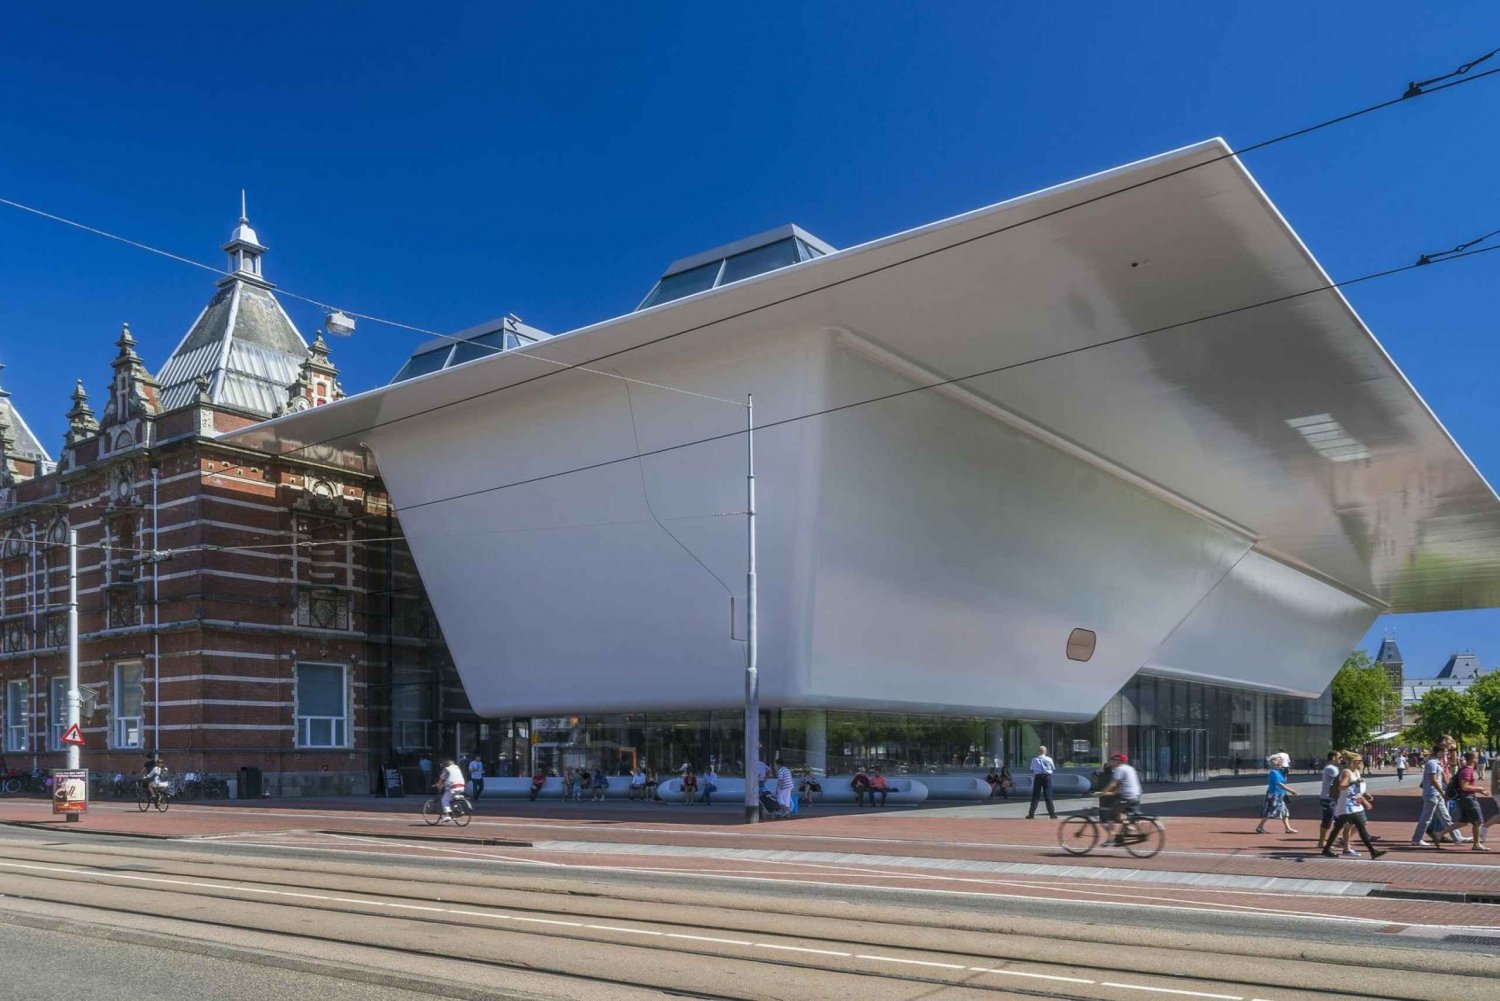 Amsterdam: Wejście do Muzeum Stedelijk i opcja wystawy Abramovića